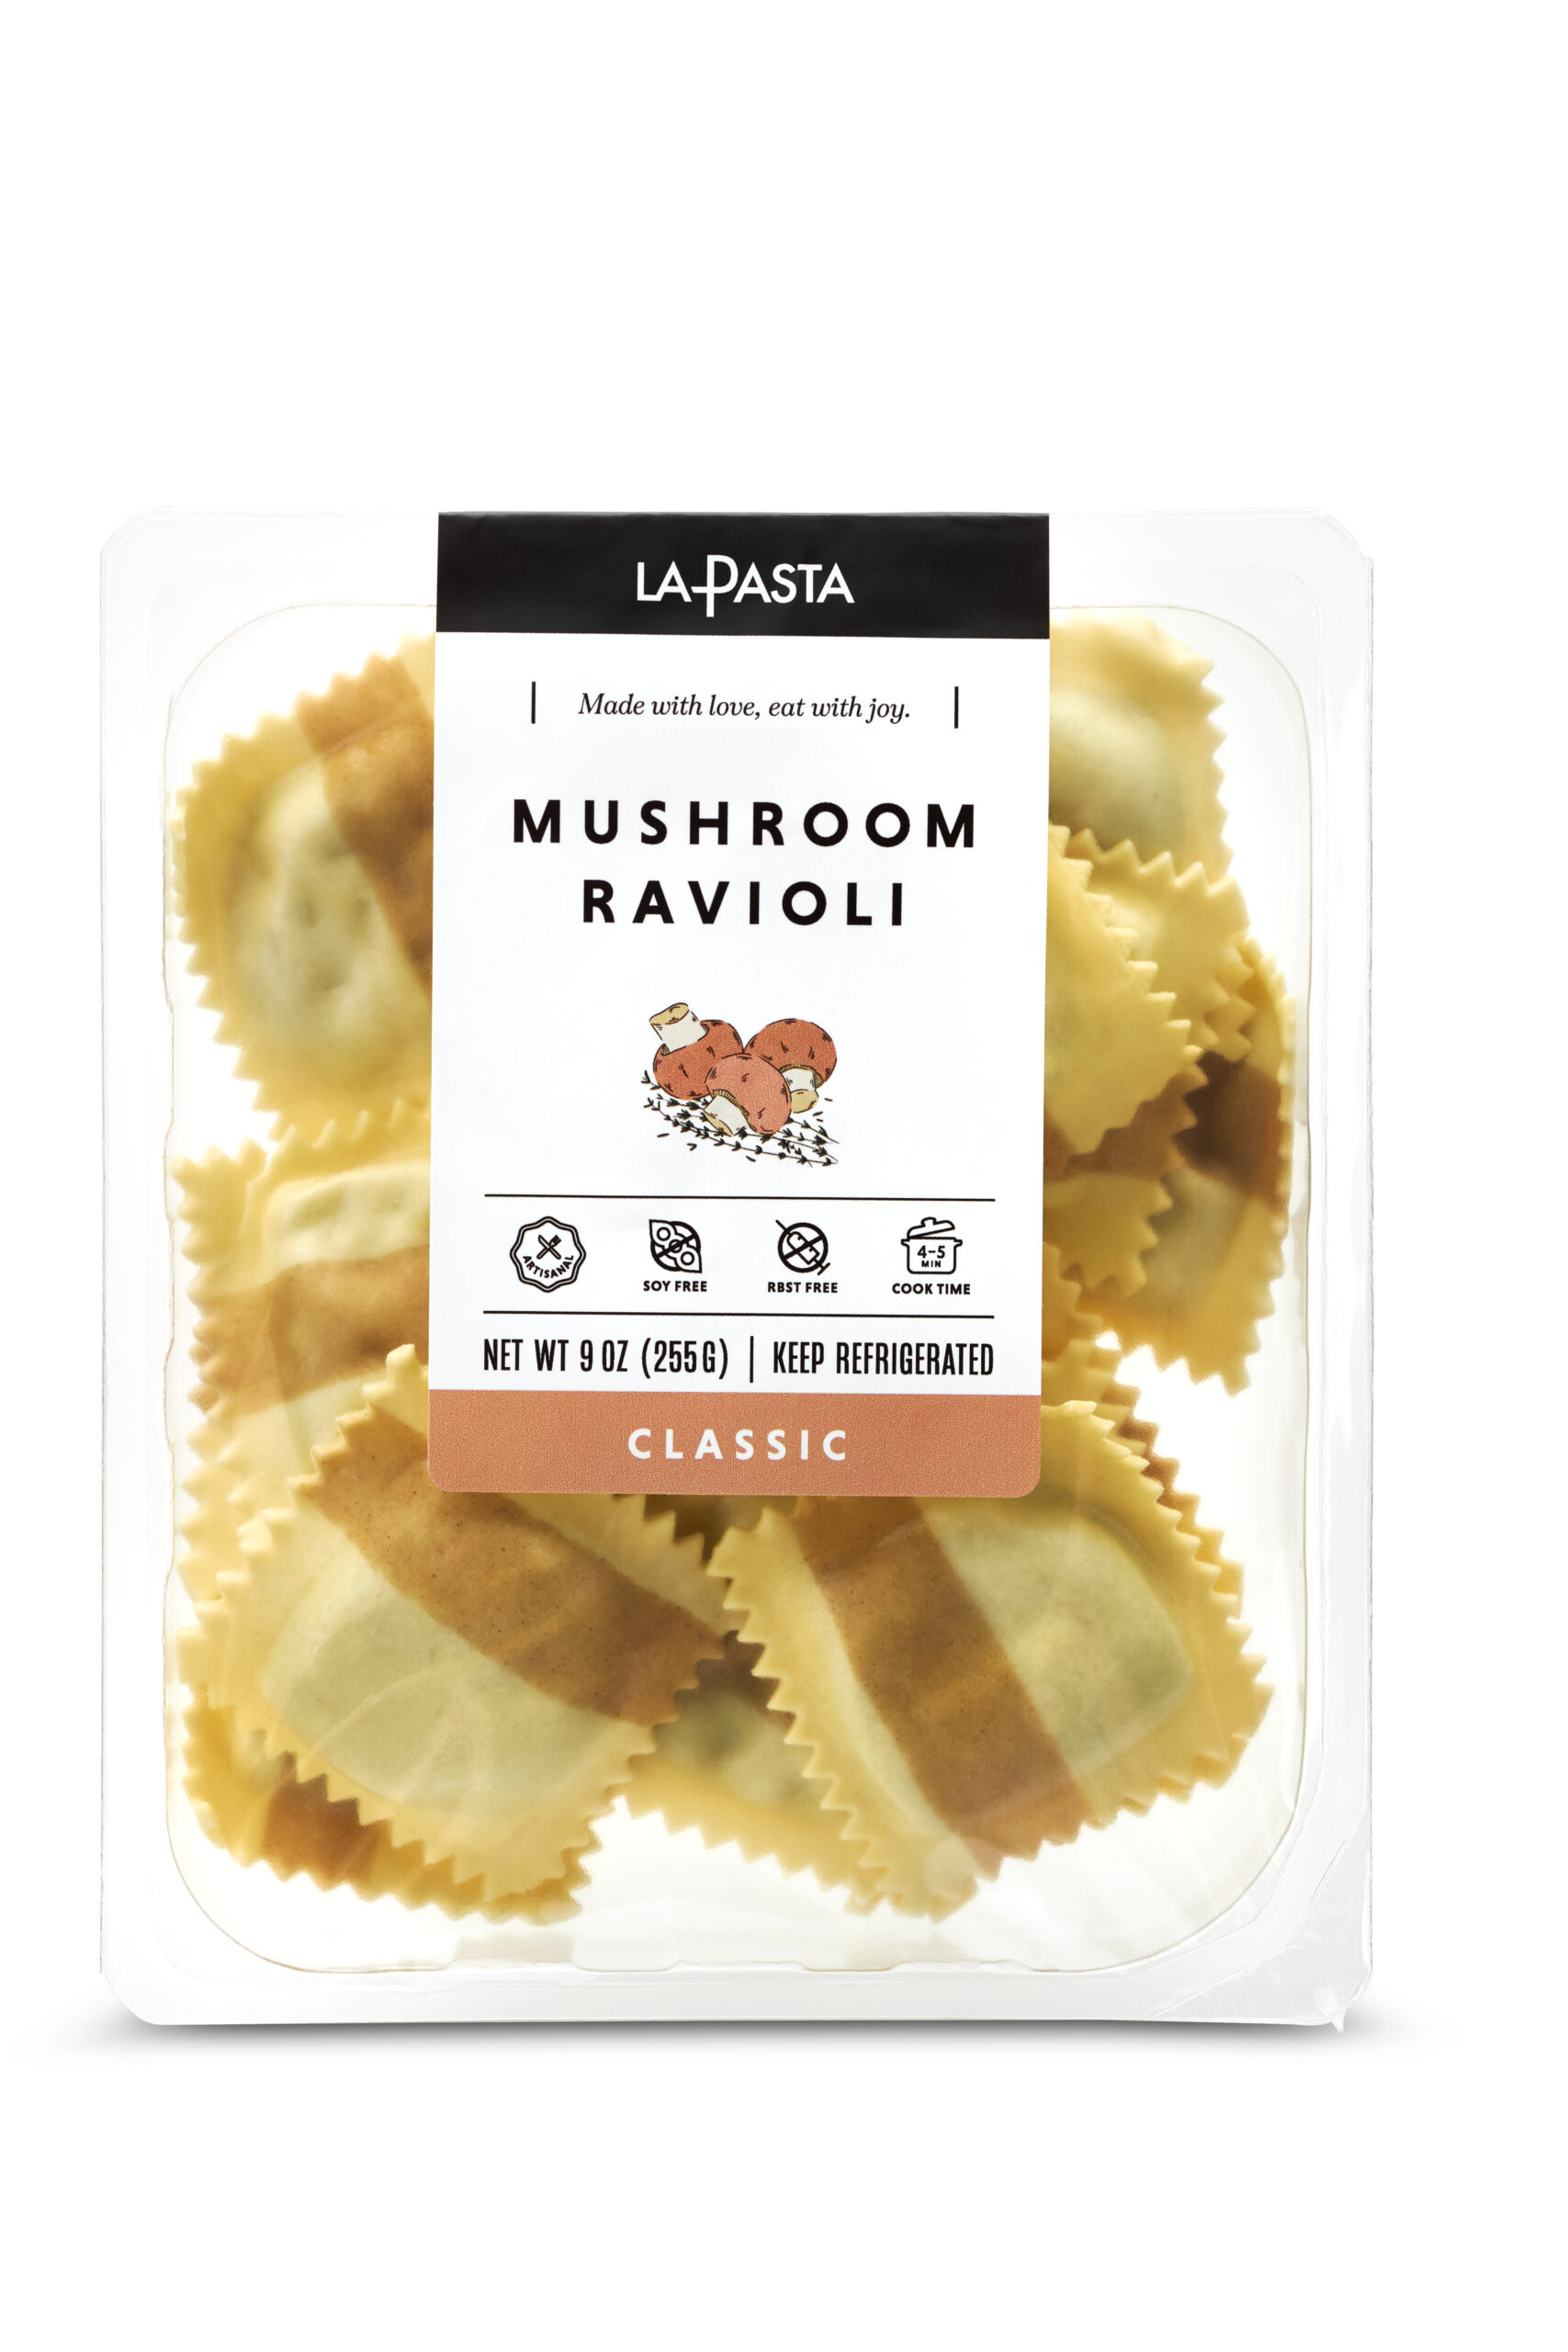 A package of mushroom ravioli is shown.